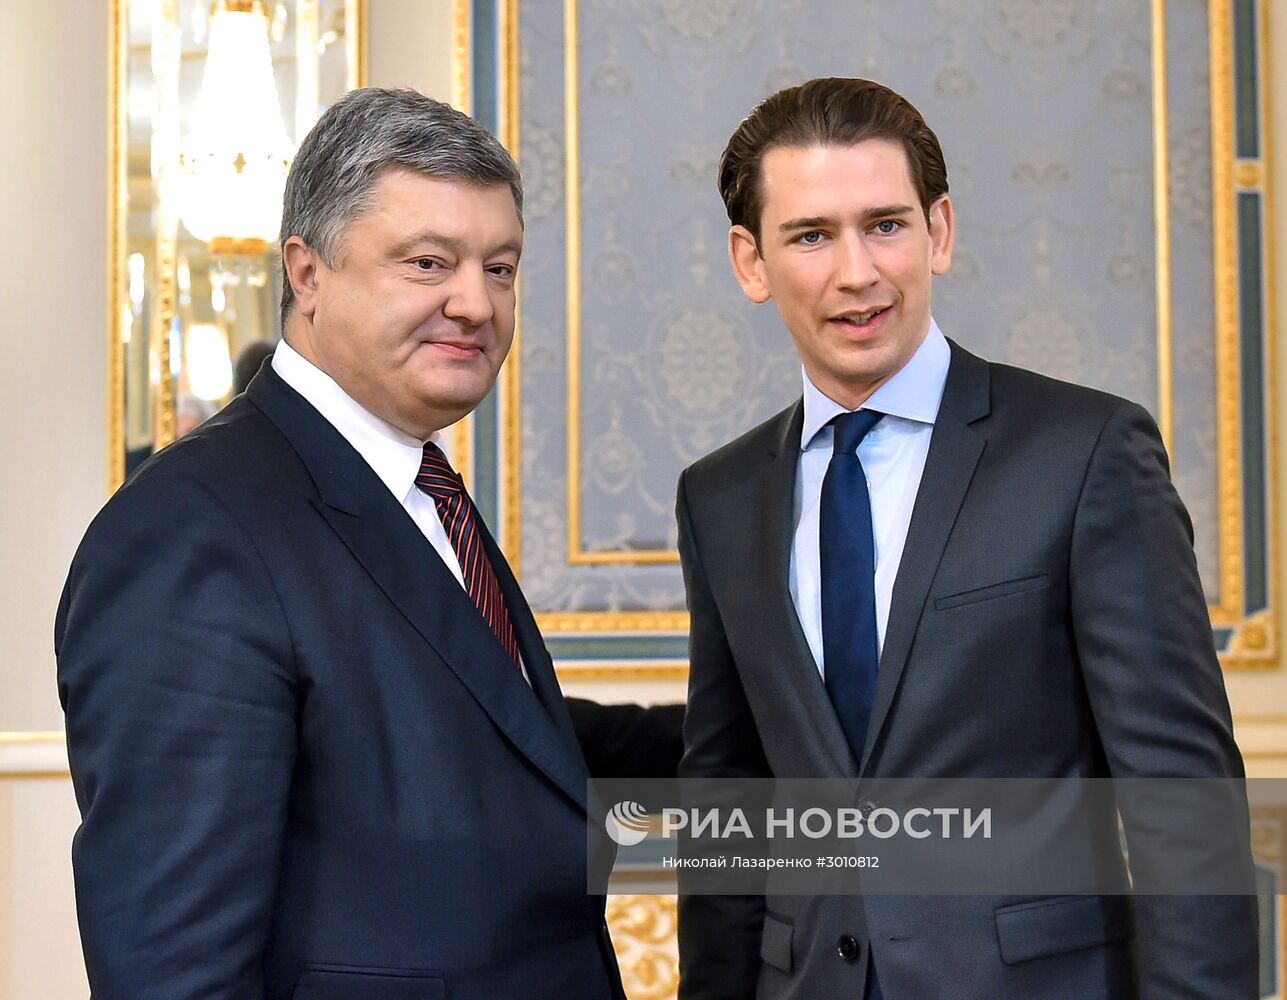 Встреча президента Украины П. Порошенко и министра иностранных дел Австрии С. Курца в Киеве